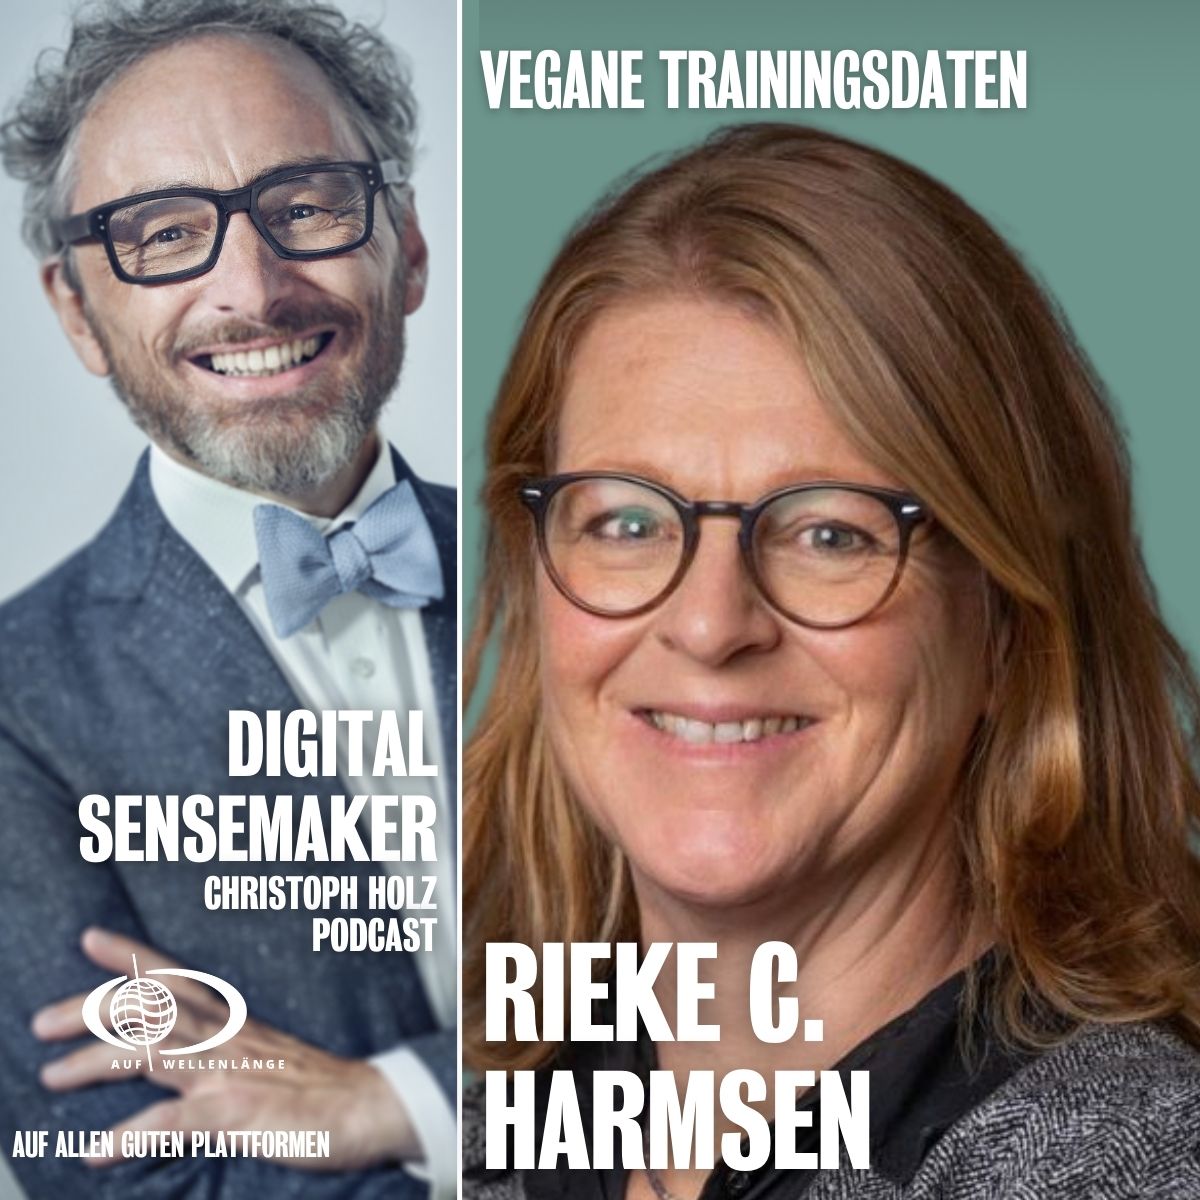 #122 “Vegane Trainingsdaten” mit Rieke C. Harmsen, Chefredakteurin von Sonntagsblatt.de